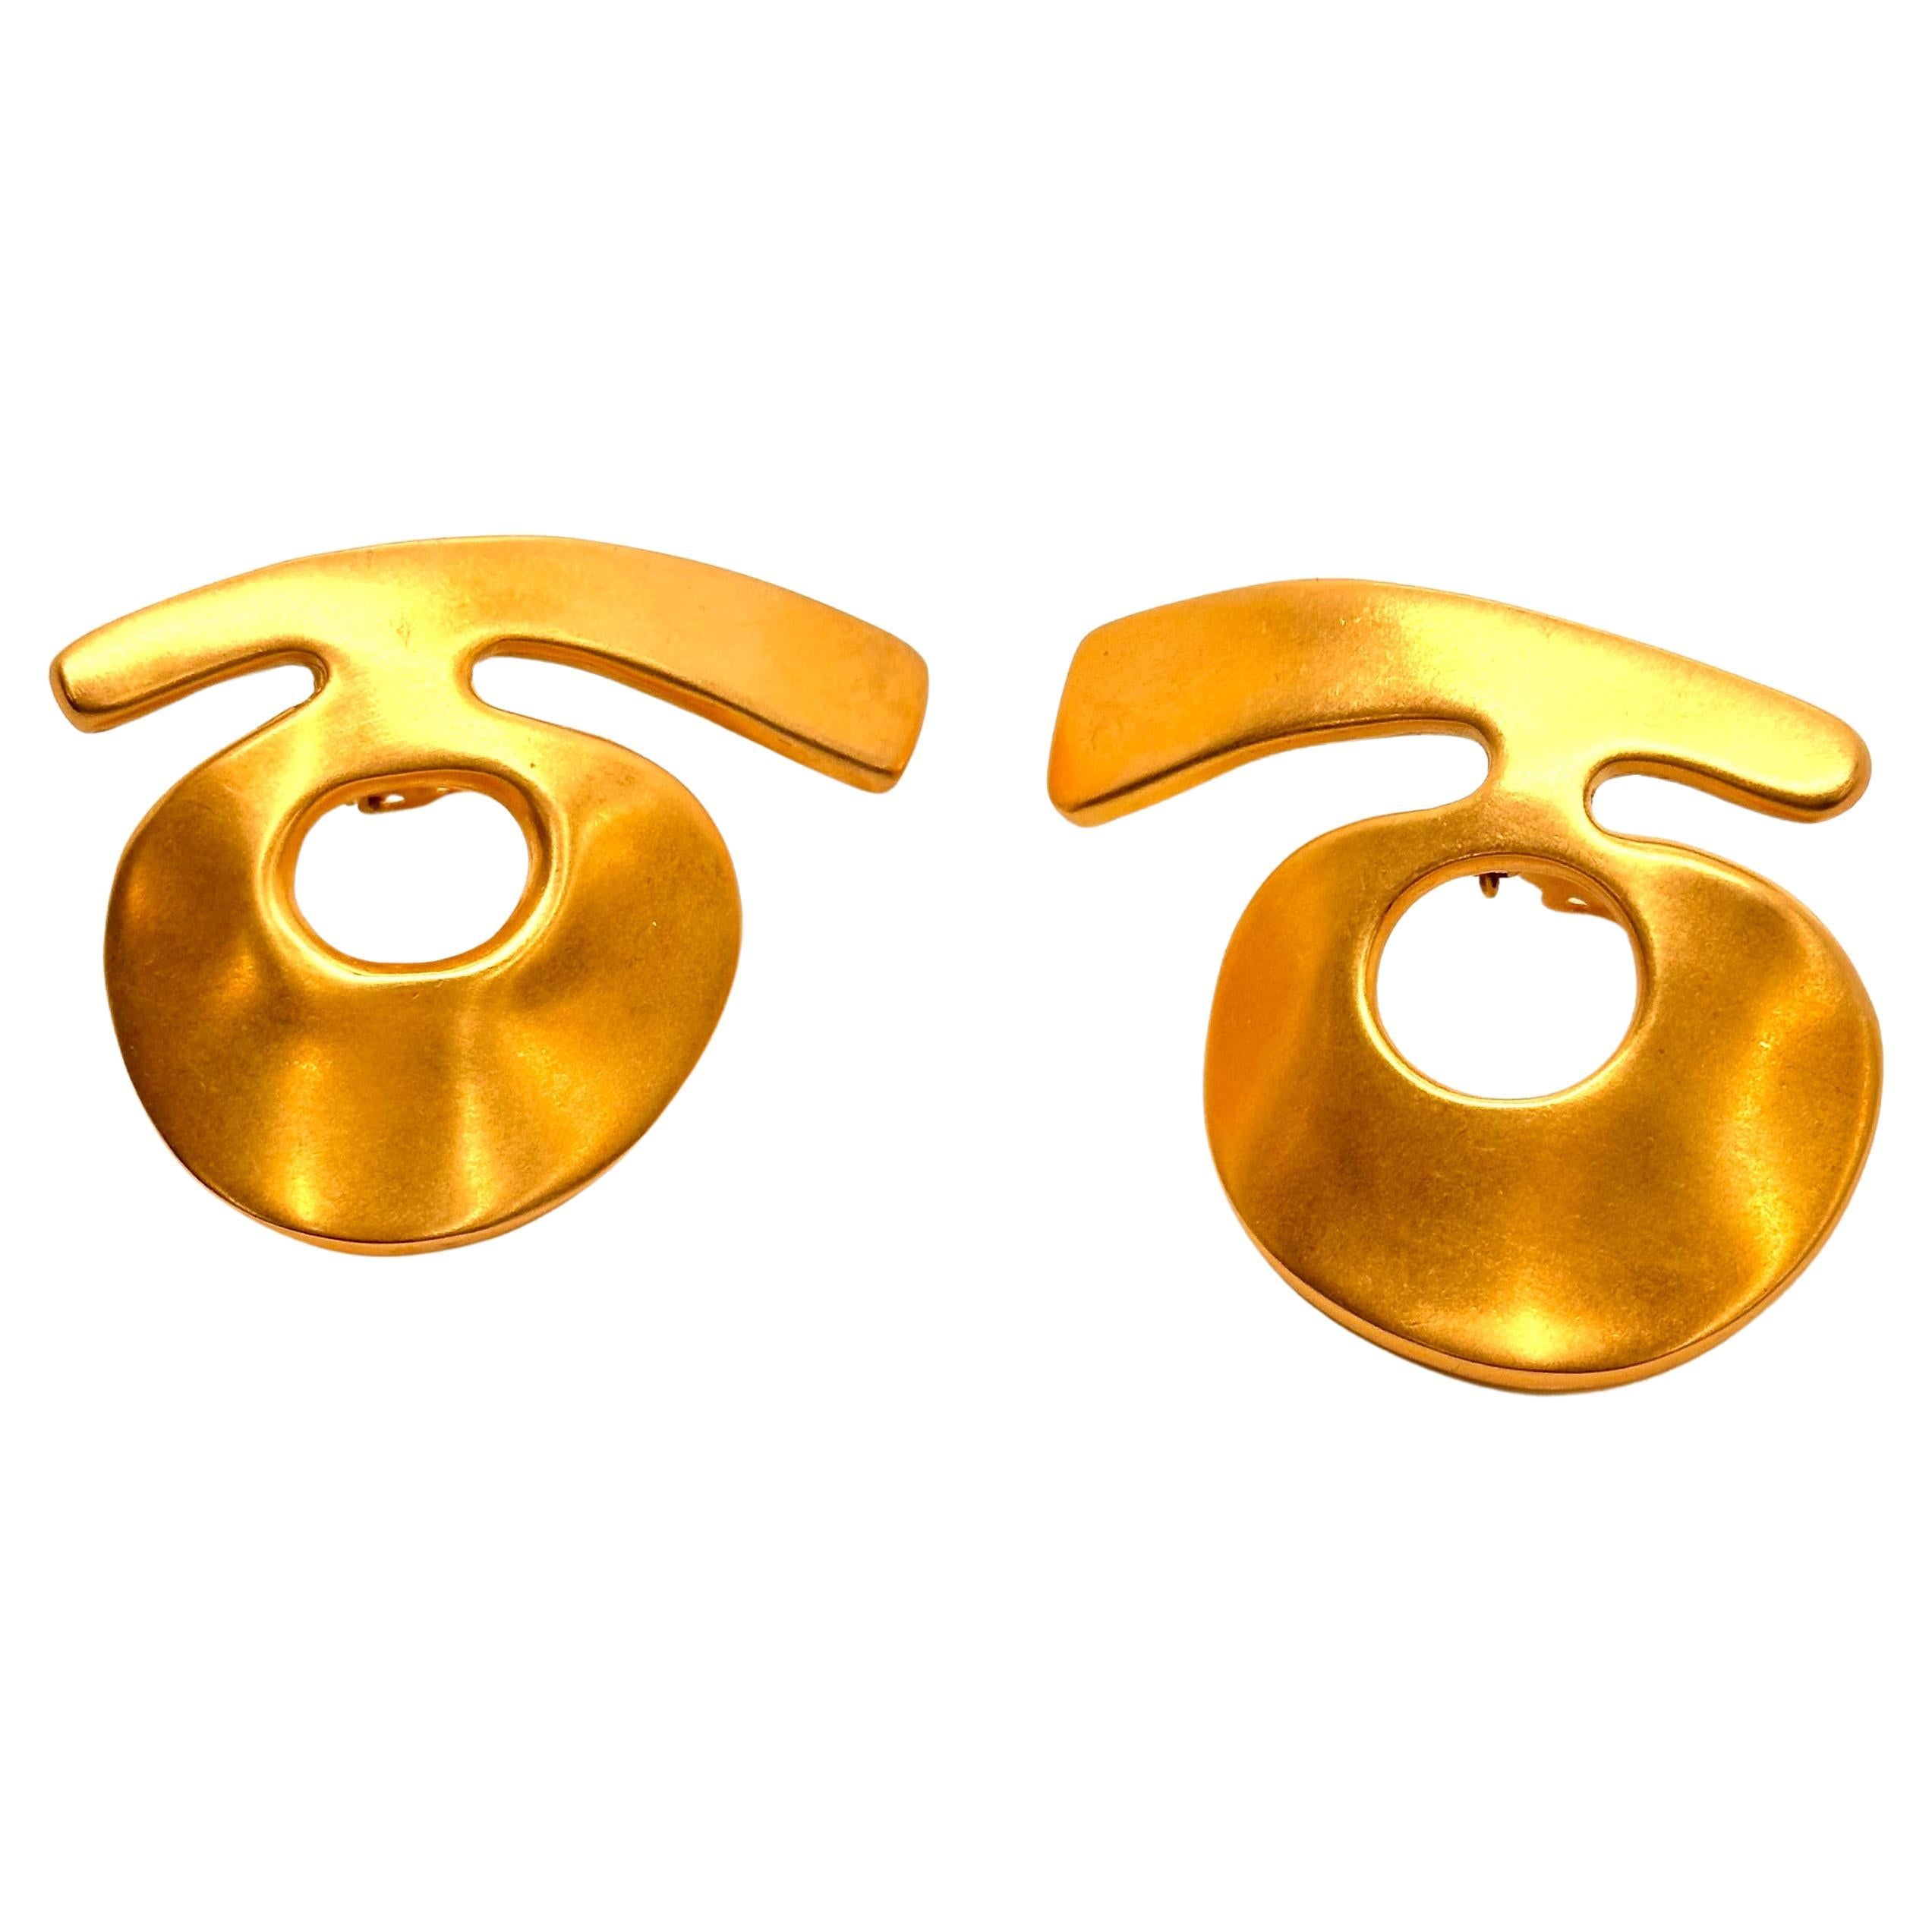 Diese sehr ungewöhnlichen Bold /Gold Ohrringe sind eigentlich Knöpfe, dass sie Clips sind und sitzen hoch auf dem Ohr. Das dynamische Design besteht aus einem geschwungenen Querbalken über einer Donut-Form, die wie eine außerirdische Kalligraphie